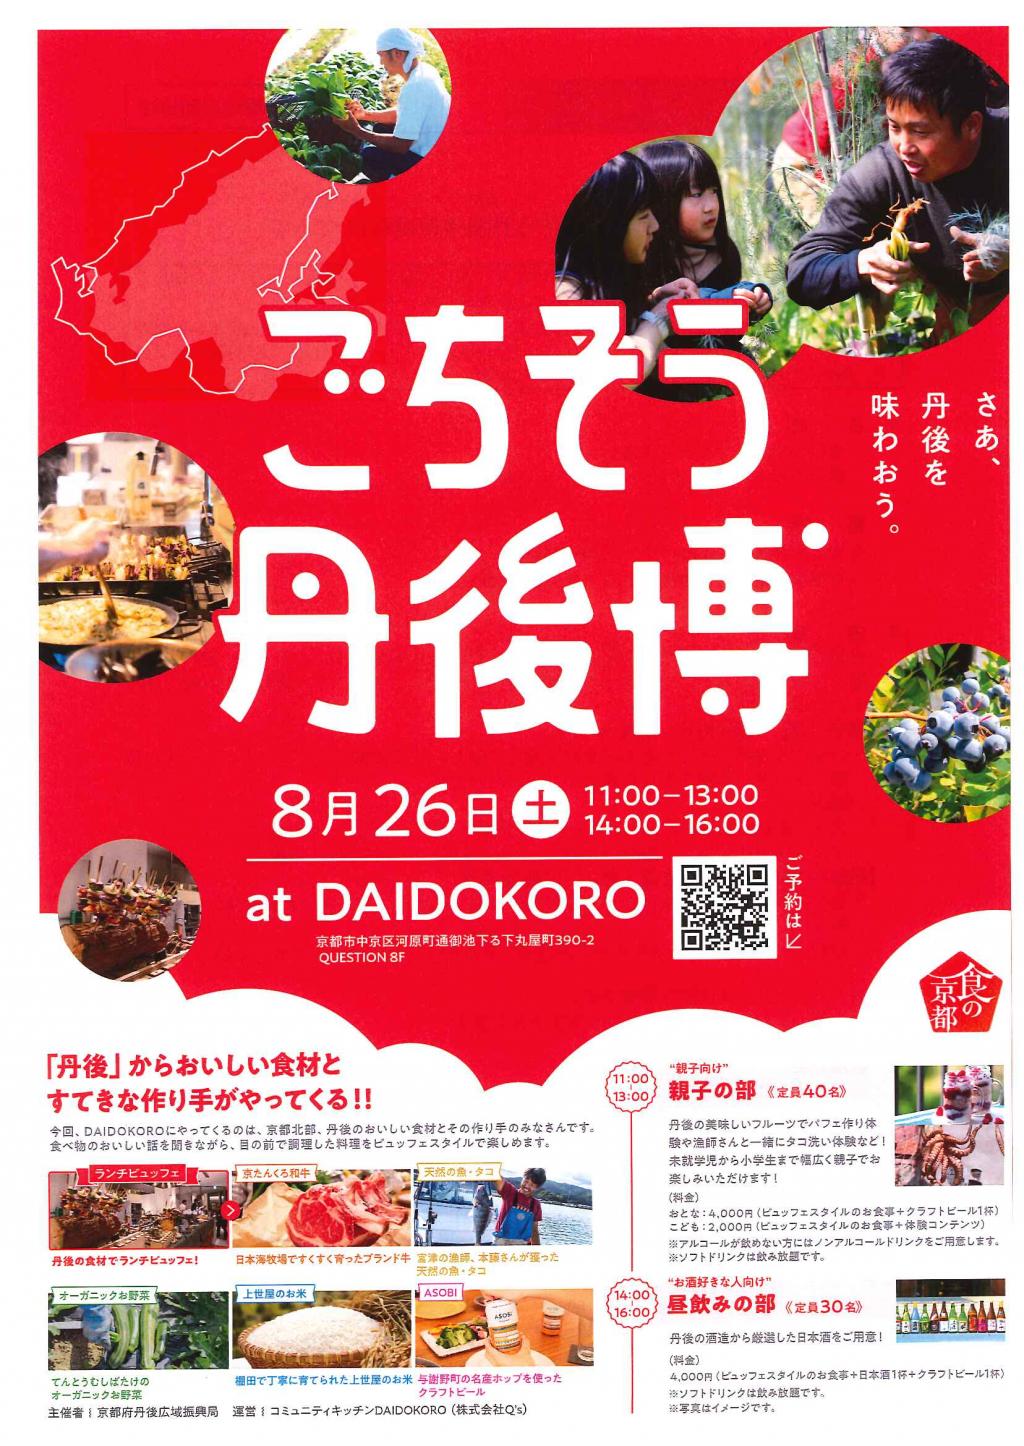 「食の京都」ごちそう丹後博の開催について